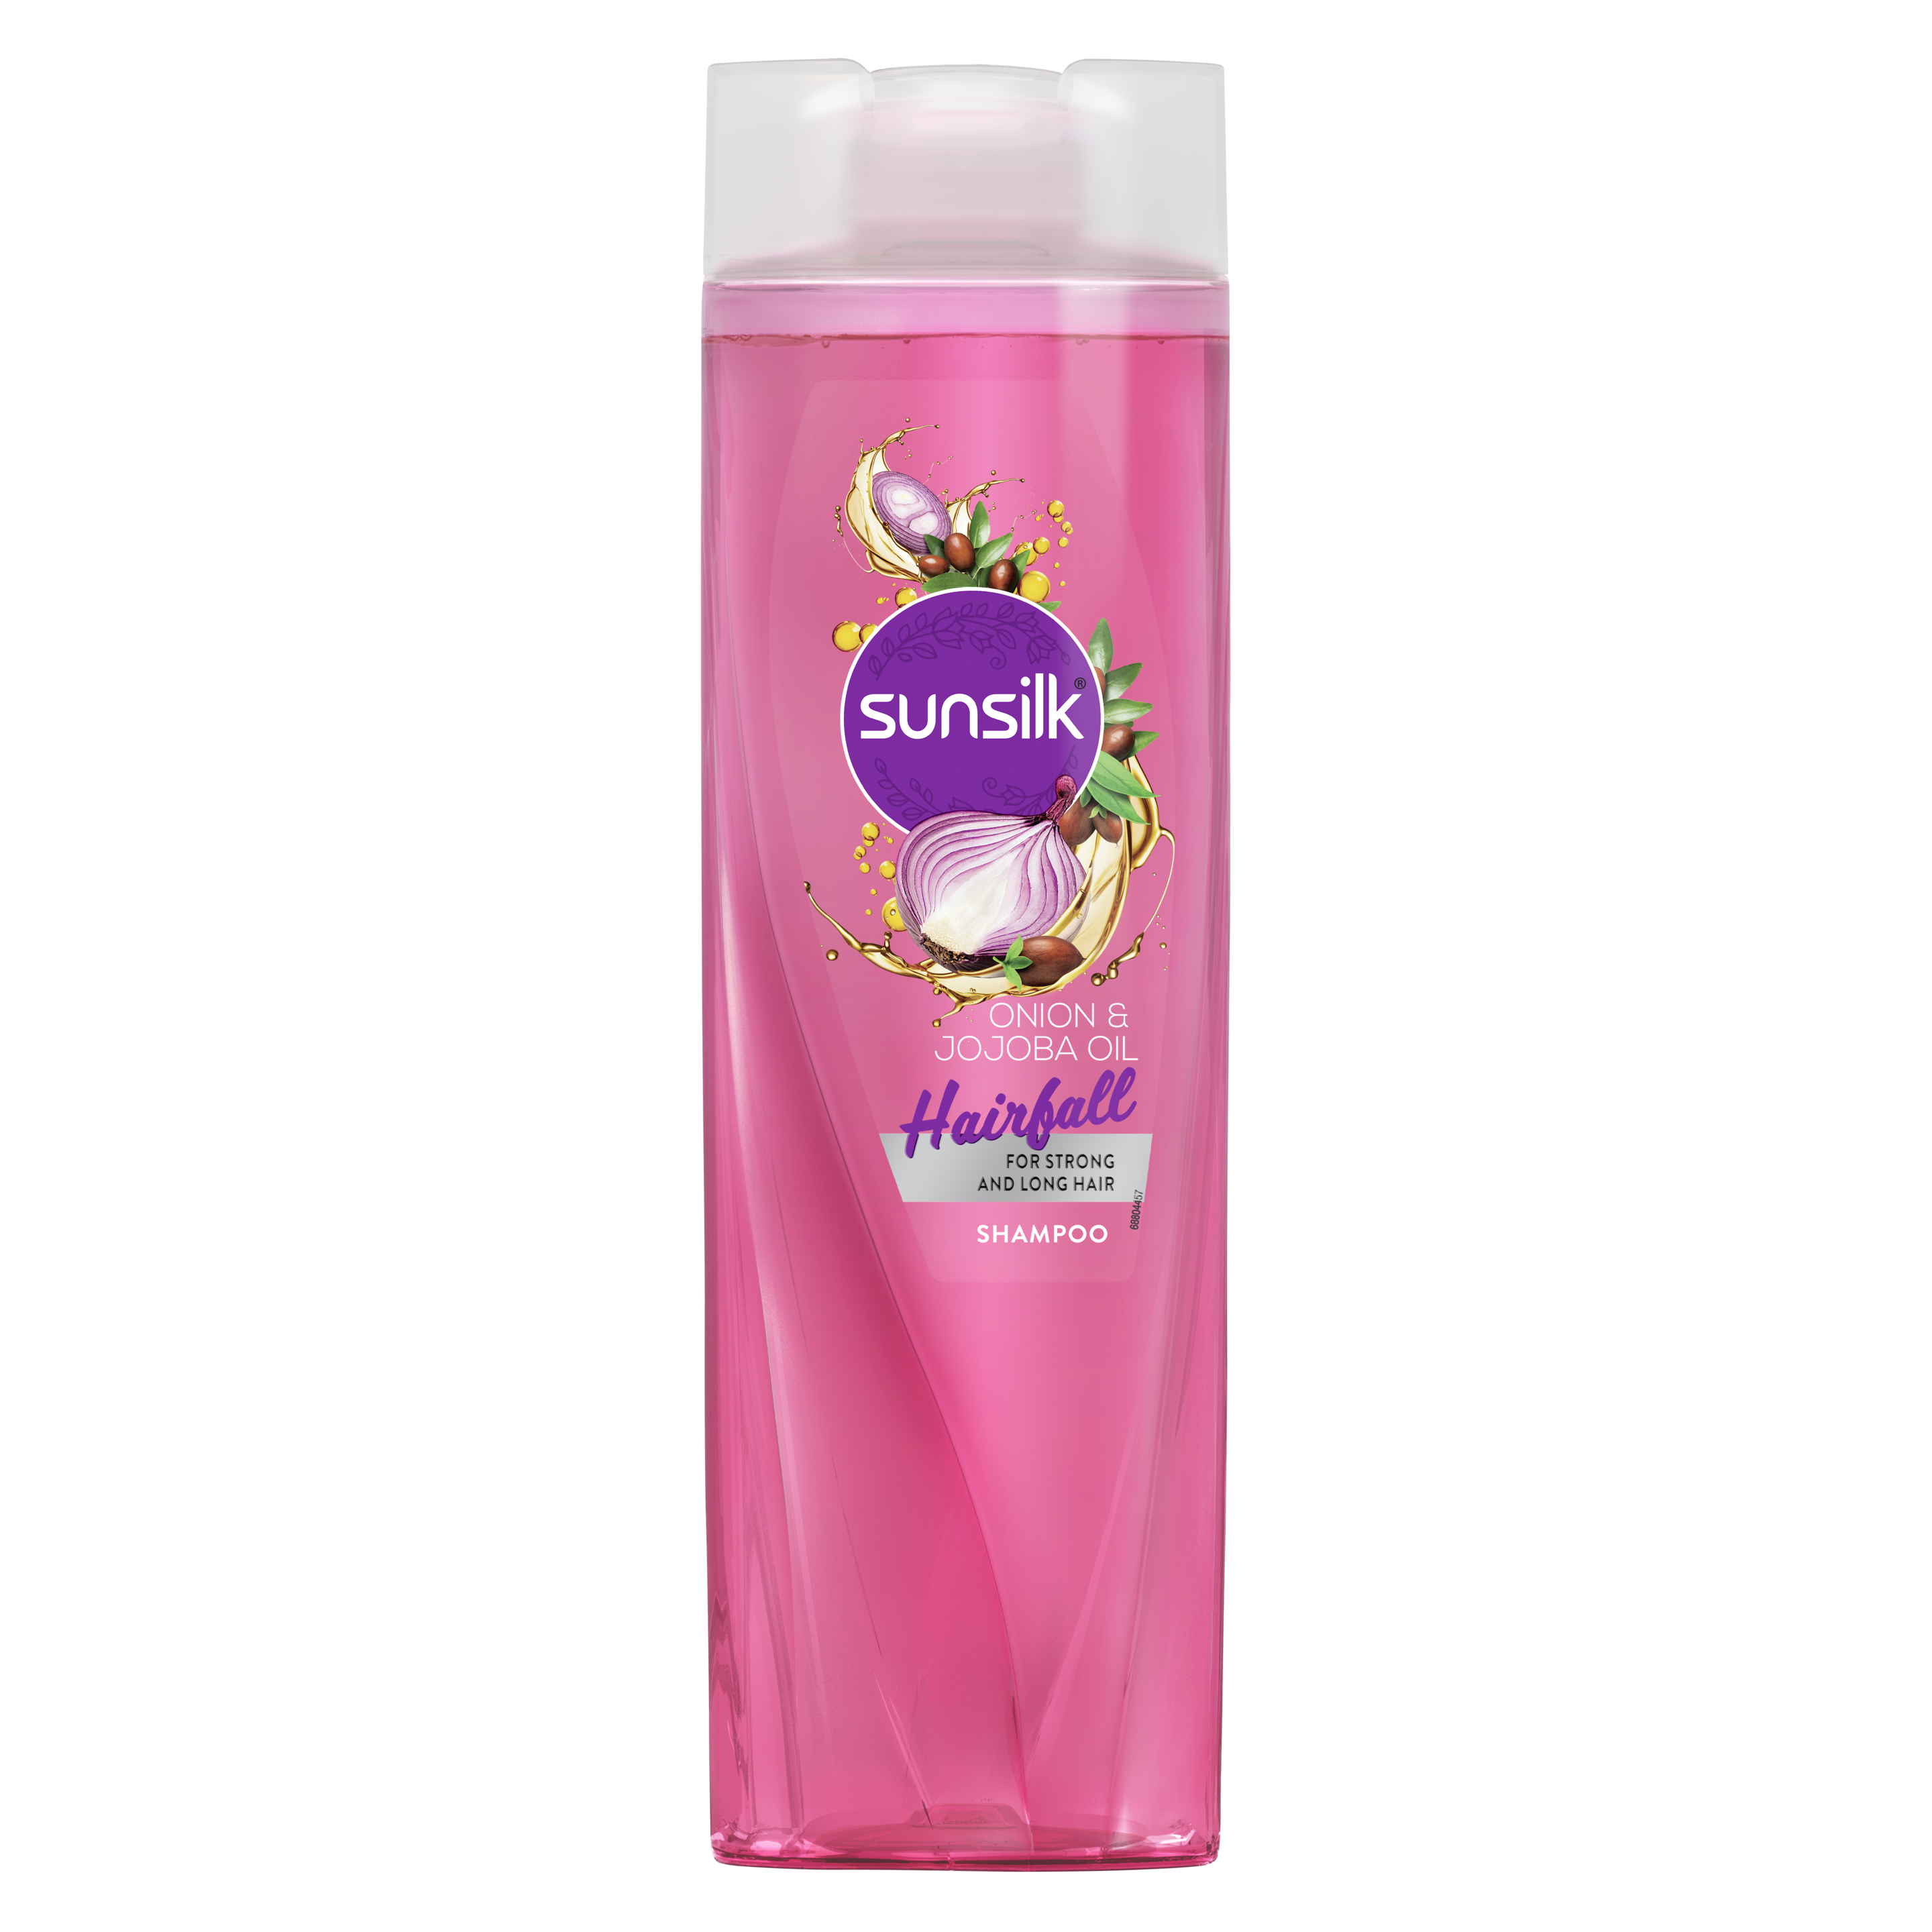 Sunsilk Onion & Jojoba Oil Hairfall Shampoo